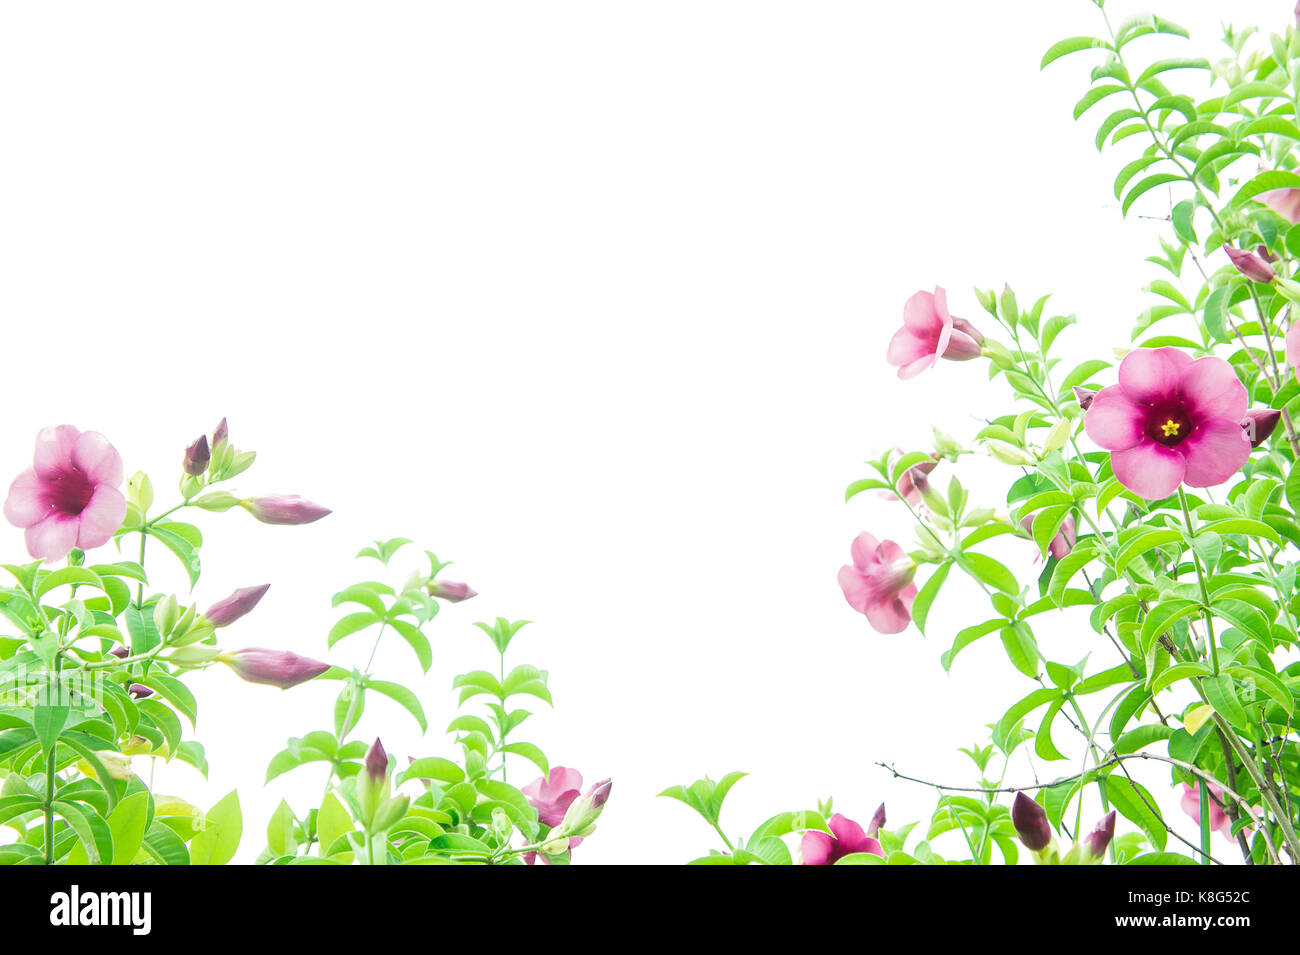 Viola fiori di bignonia, fiori rosa crescente floreali vintage e coppy spazio bianco come sfondo Foto Stock